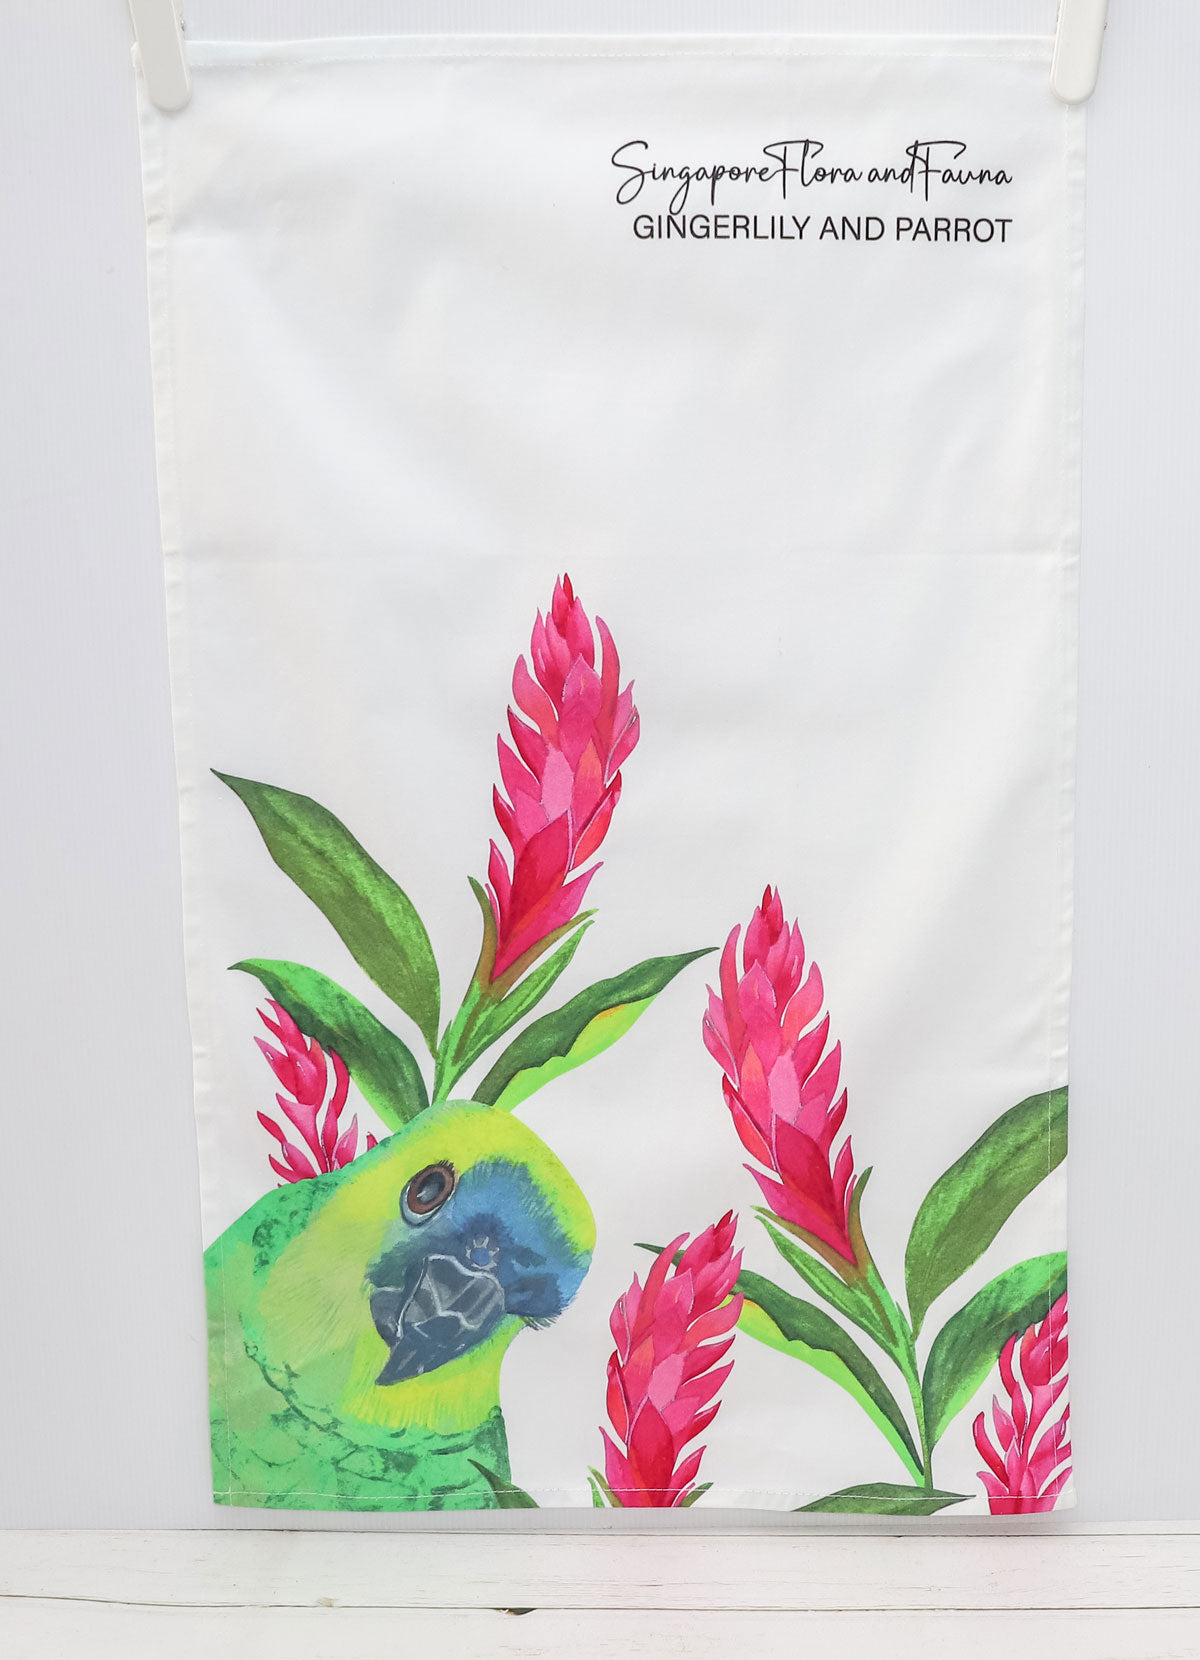 Flora and Fauna Tea Towel